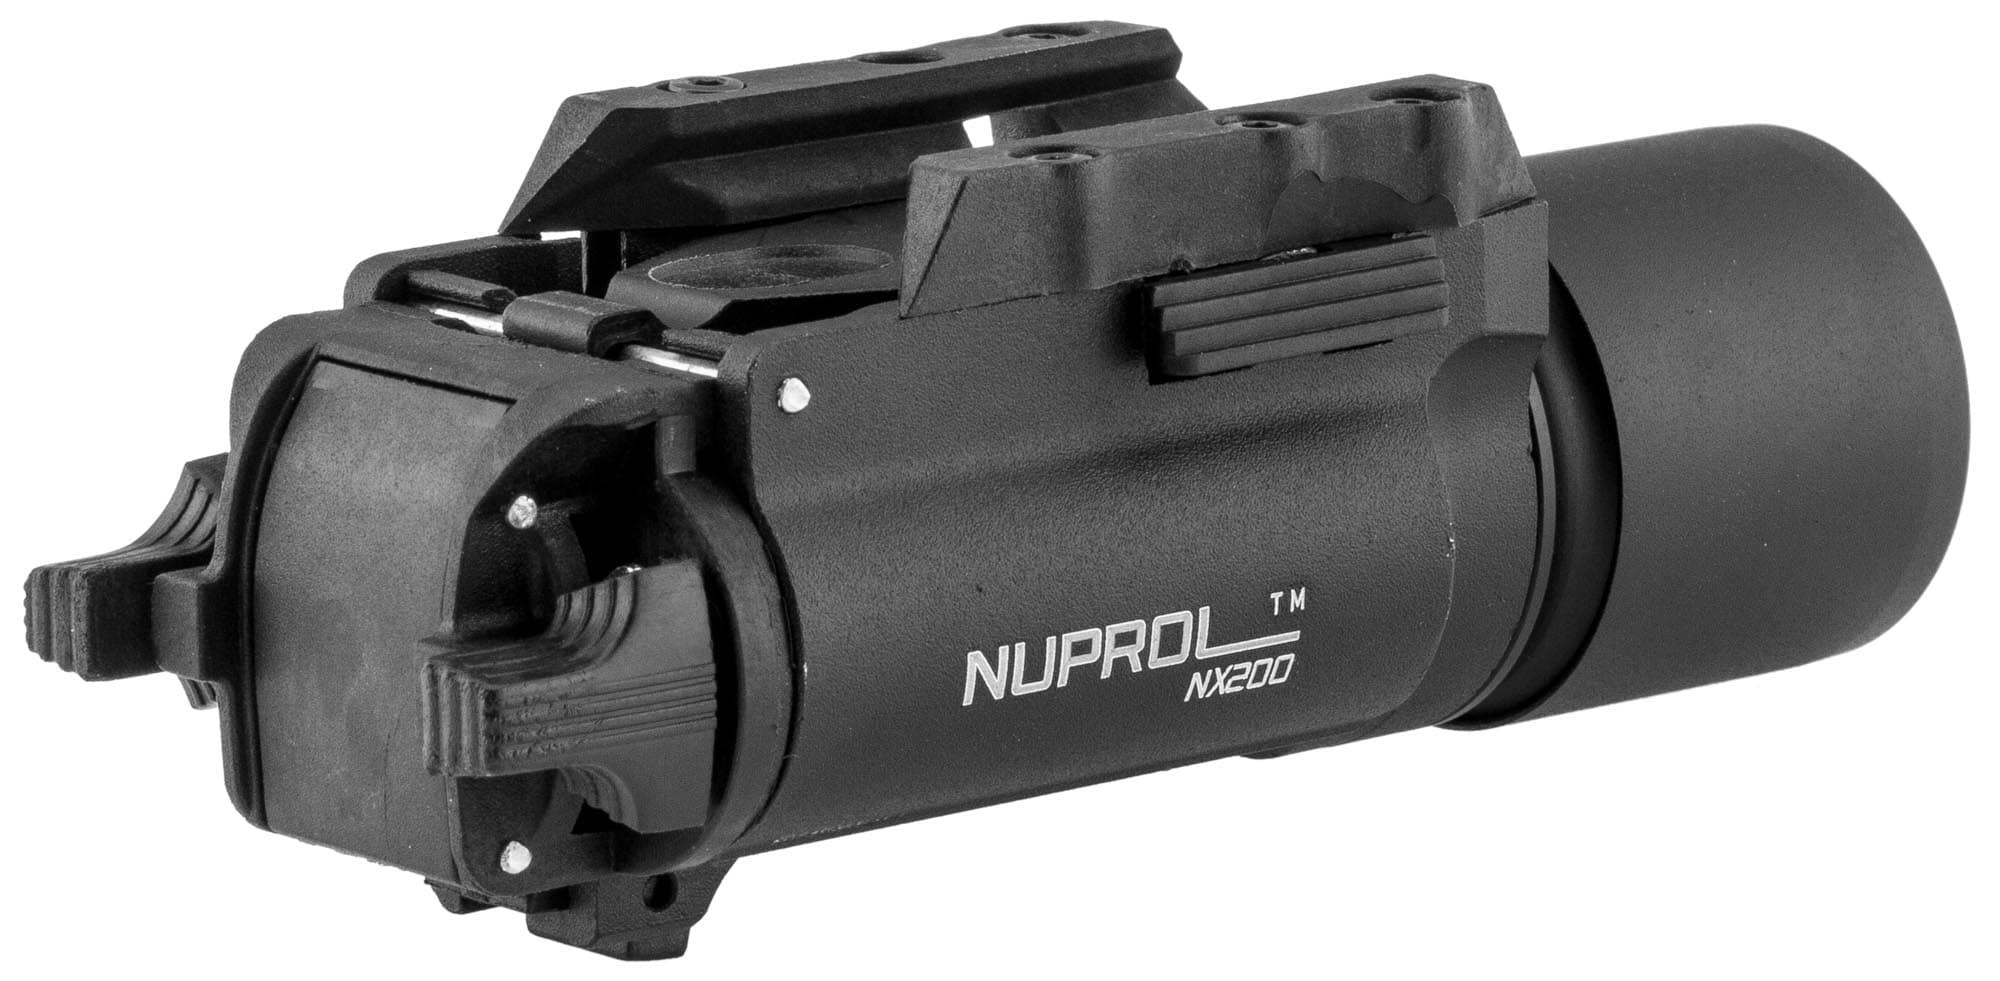 Nuprol - Lampe NX200 - 200 Lumens - Noir - Elite Airsoft